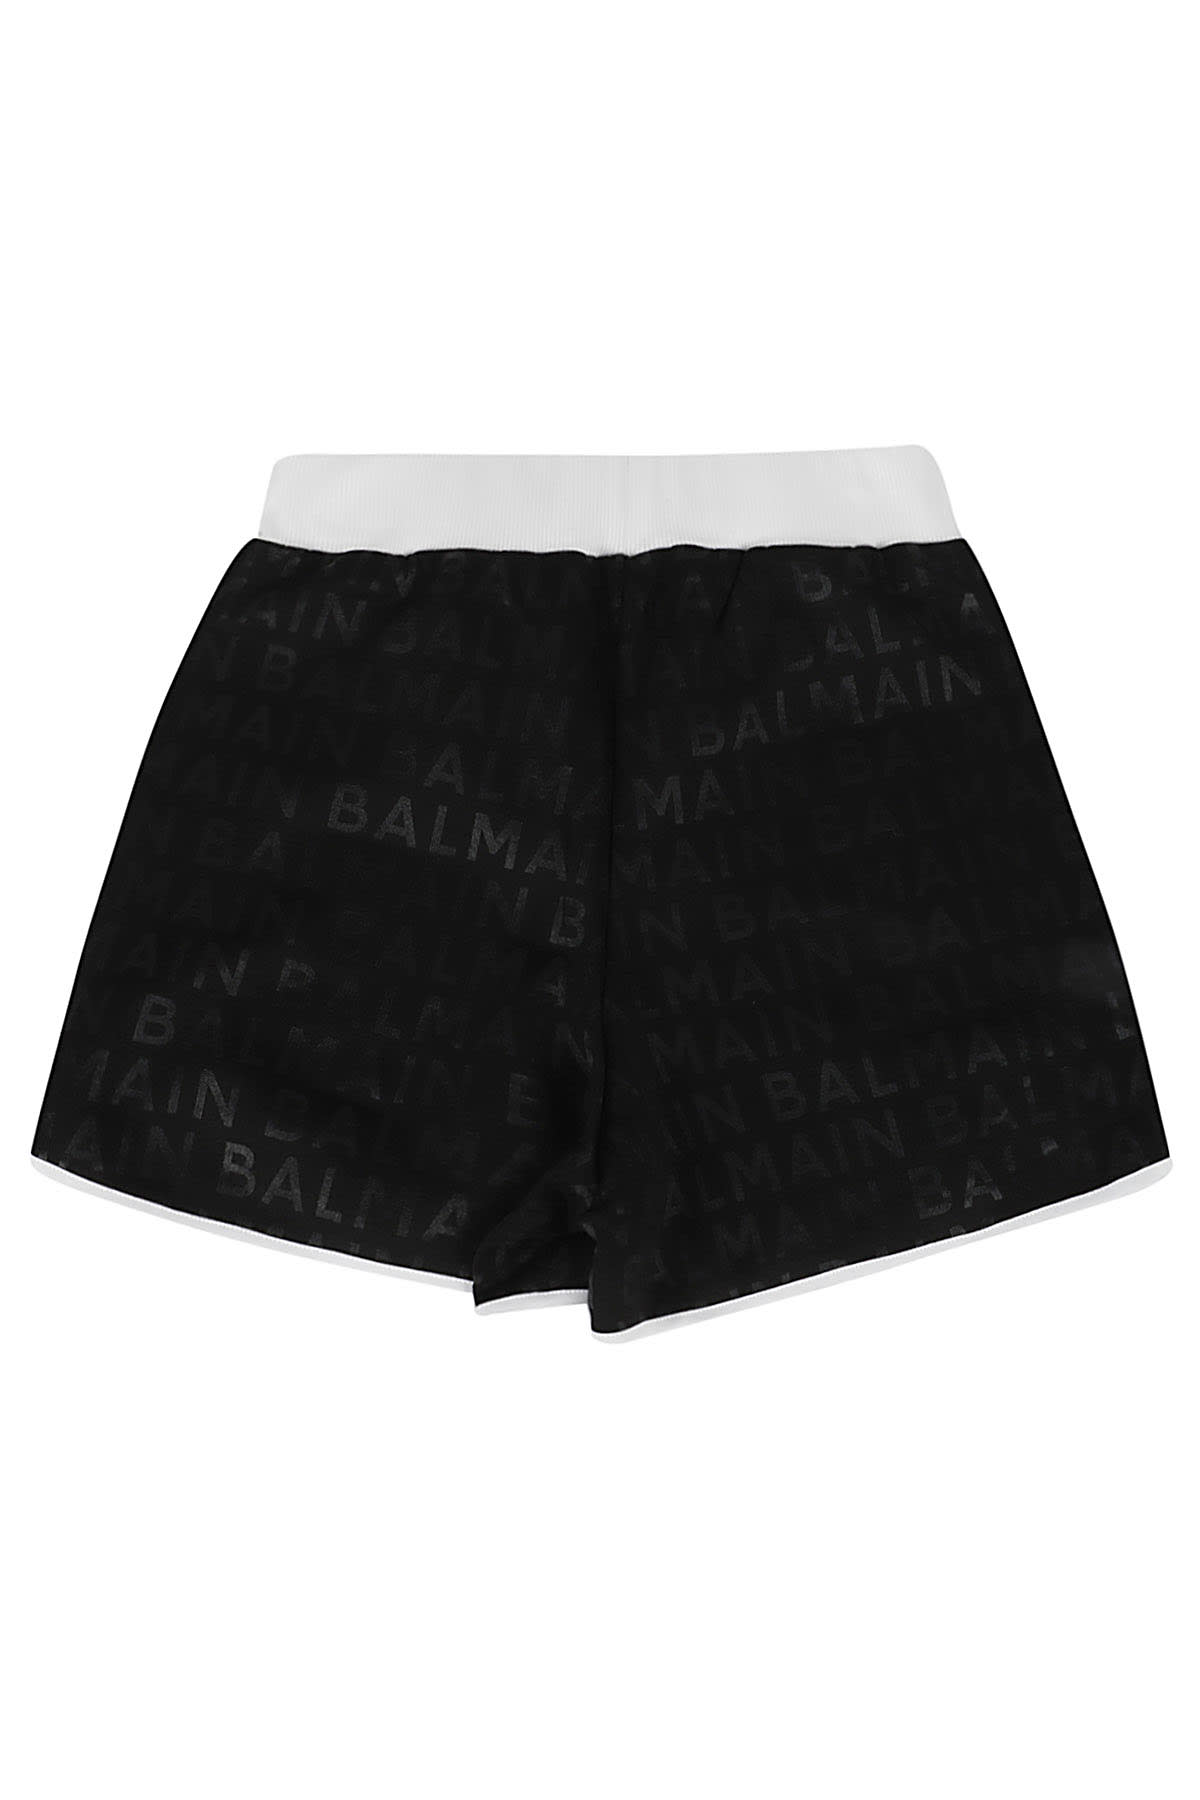 Shop Balmain Jersey Shorts In Bc Black White